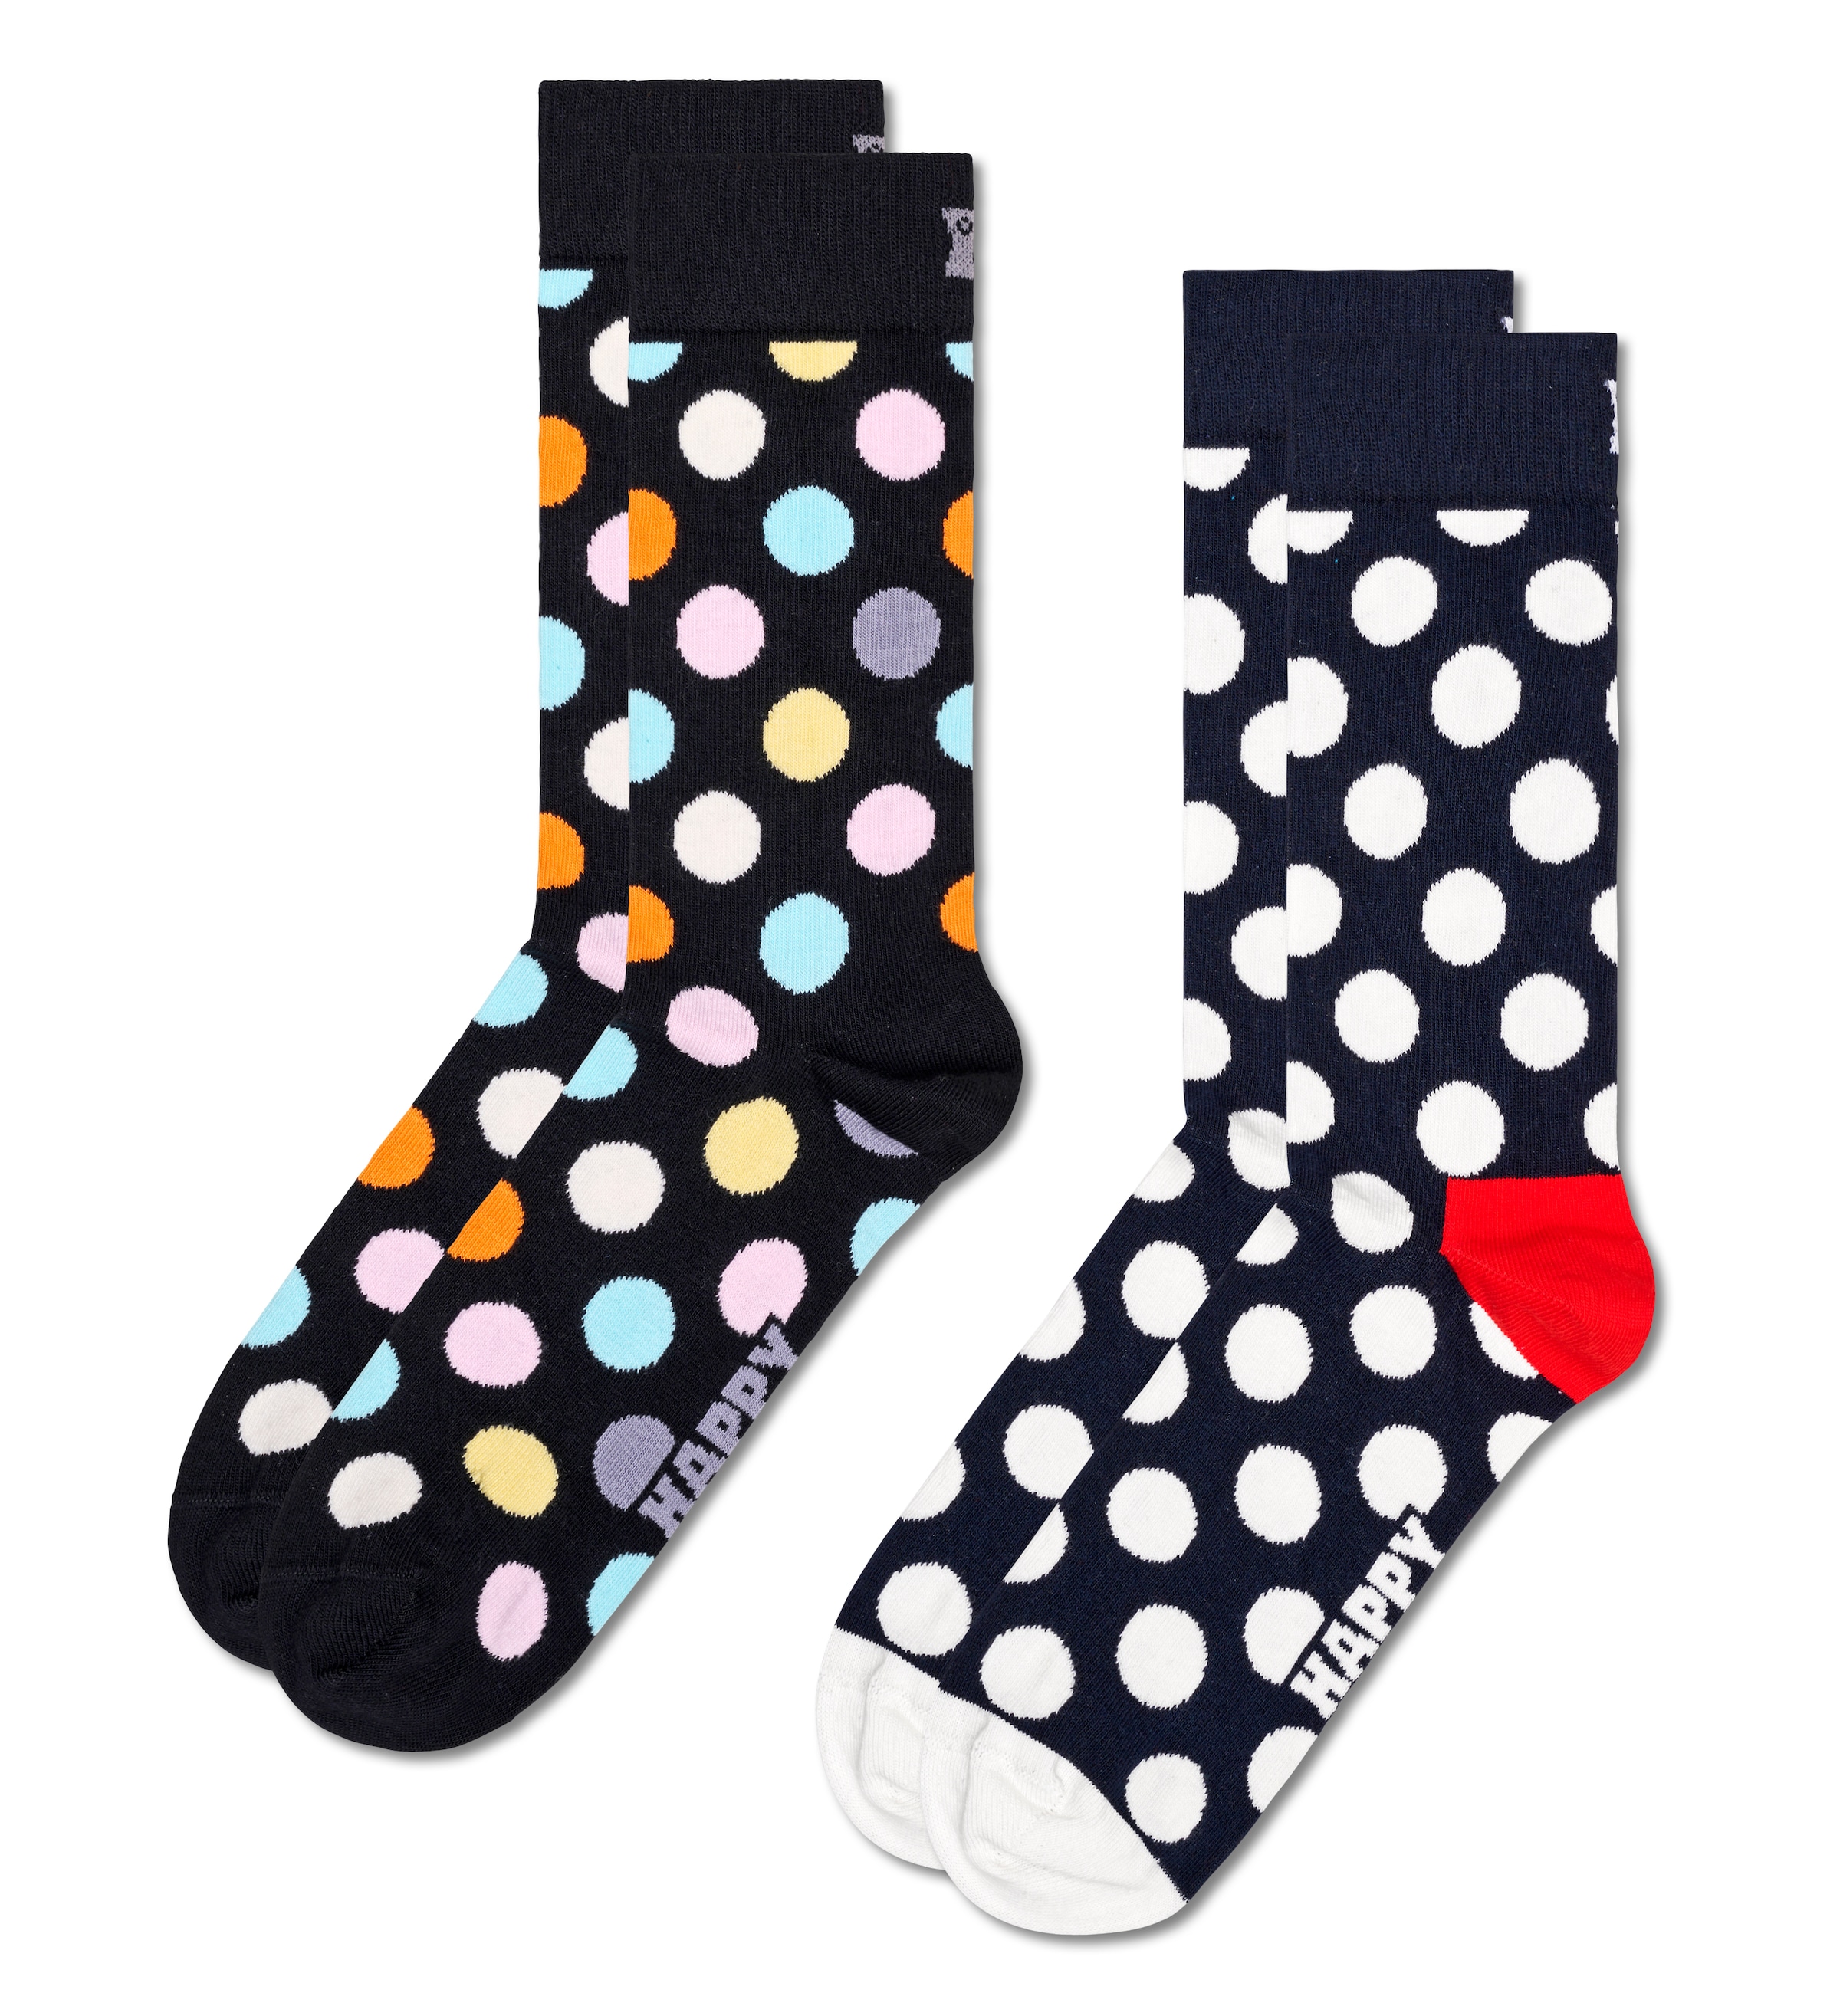 großer Happy in OTTO Auswahl Socks bestellen bei